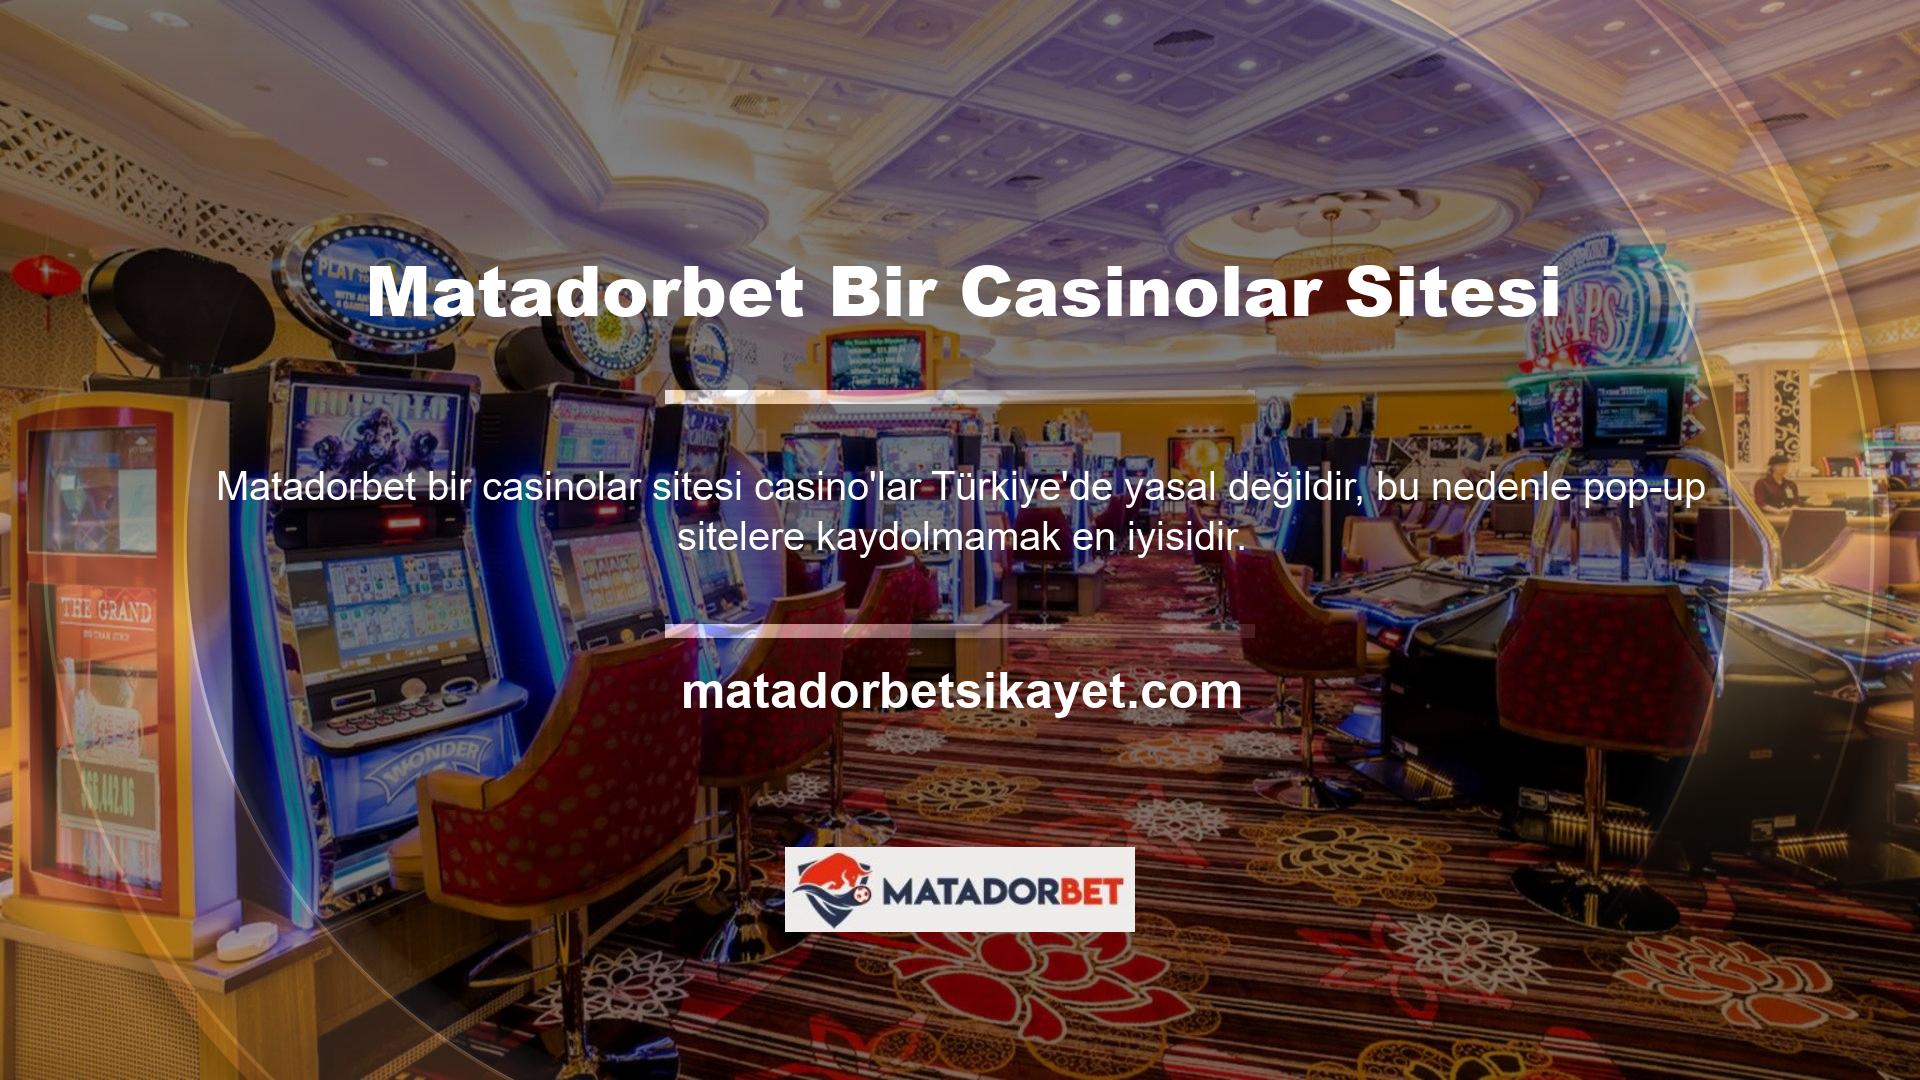 Matadorbet bir casinolar sitesidir